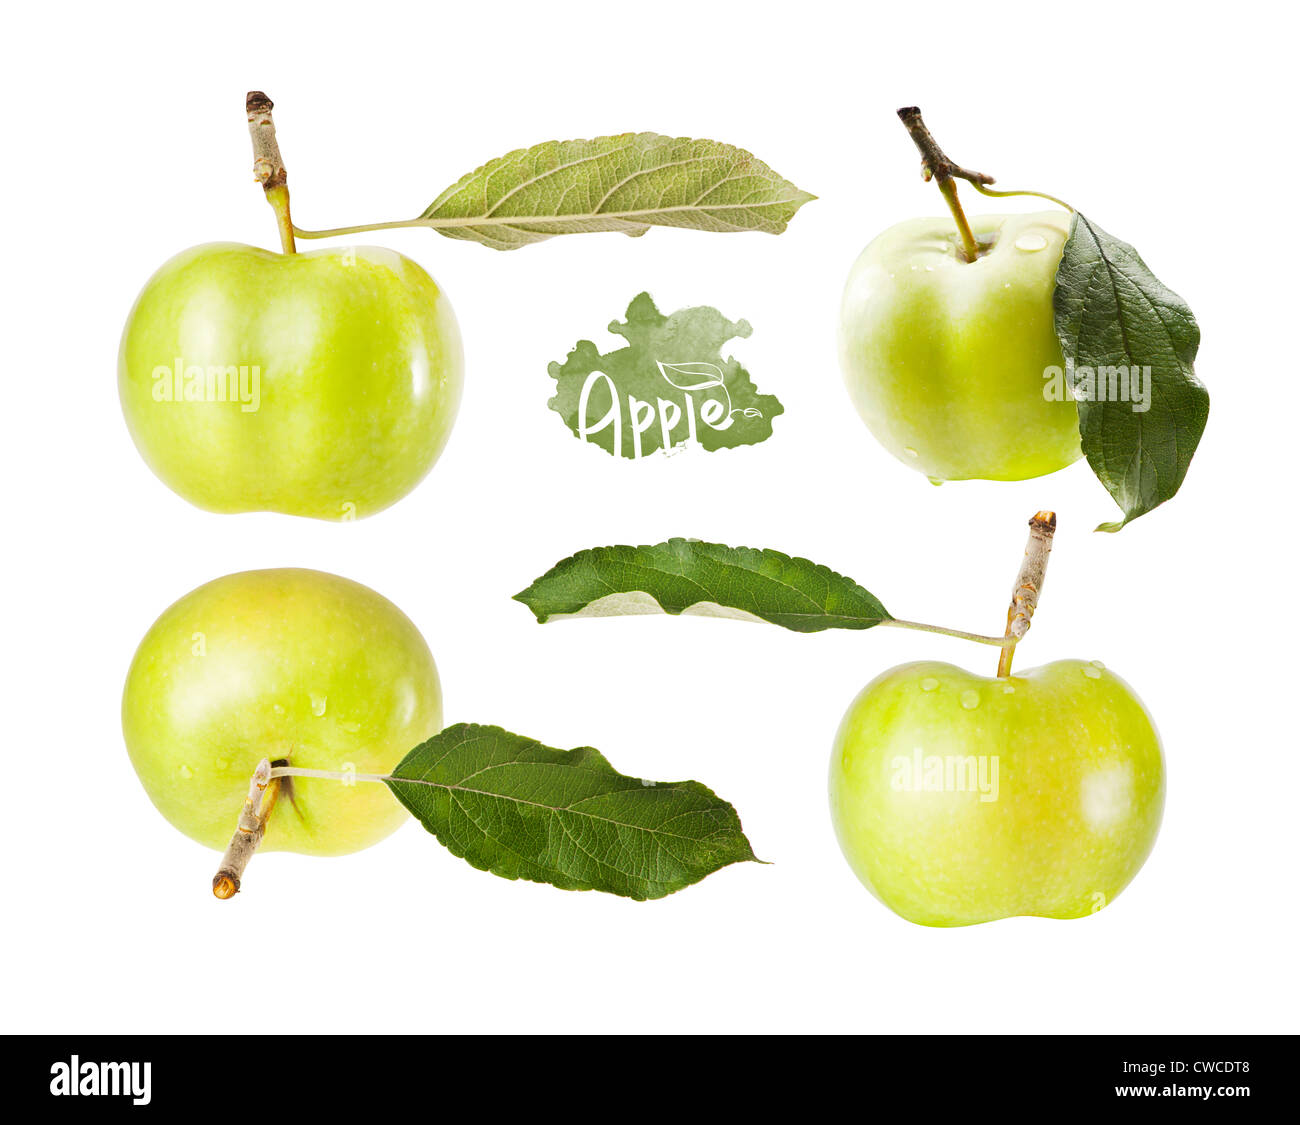 Définir la pomme verte avec la feuille dans différents angles, isolé sur fond blanc Banque D'Images